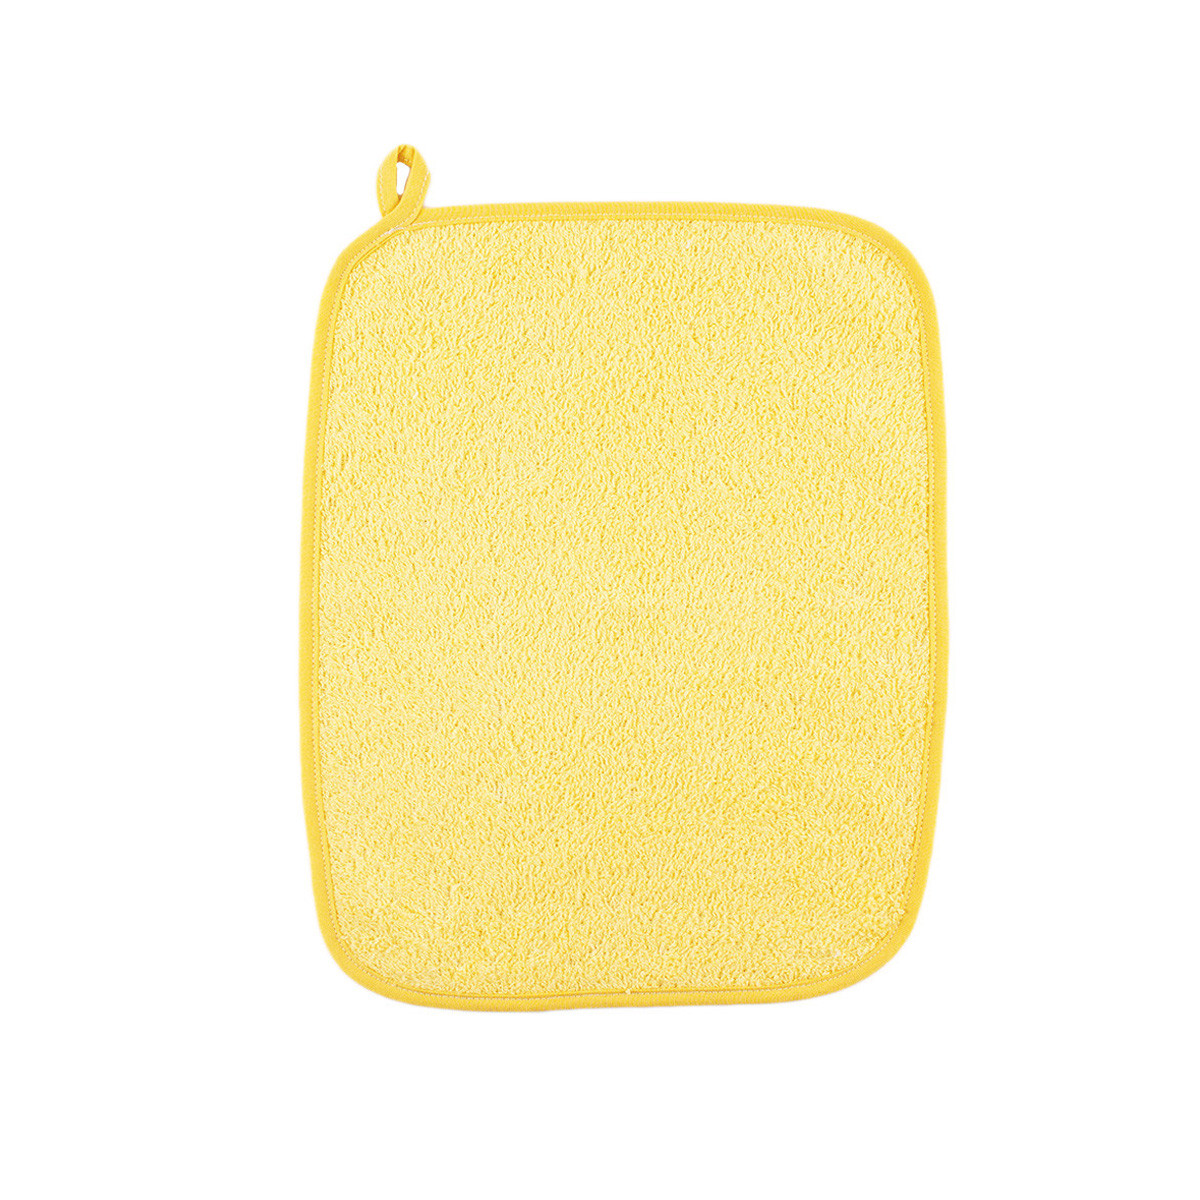 Хавлиена кърпа за лице и ръце в жълто 35 х 25 см